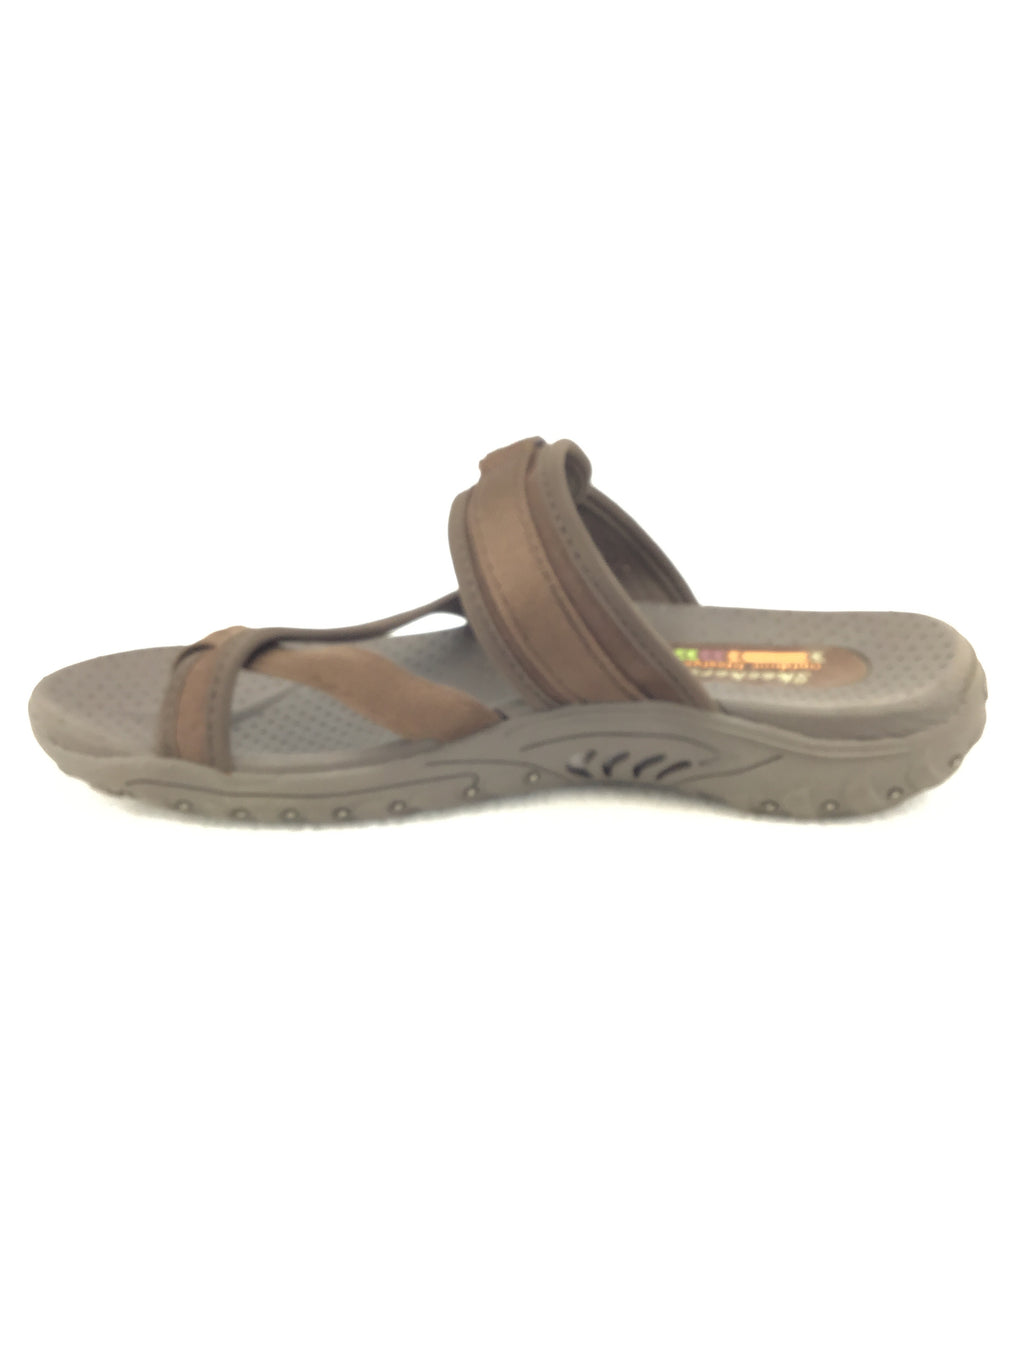 Skechers Outdoor Lifestyle Sandals Size 8 – Marti & Liz Boutique